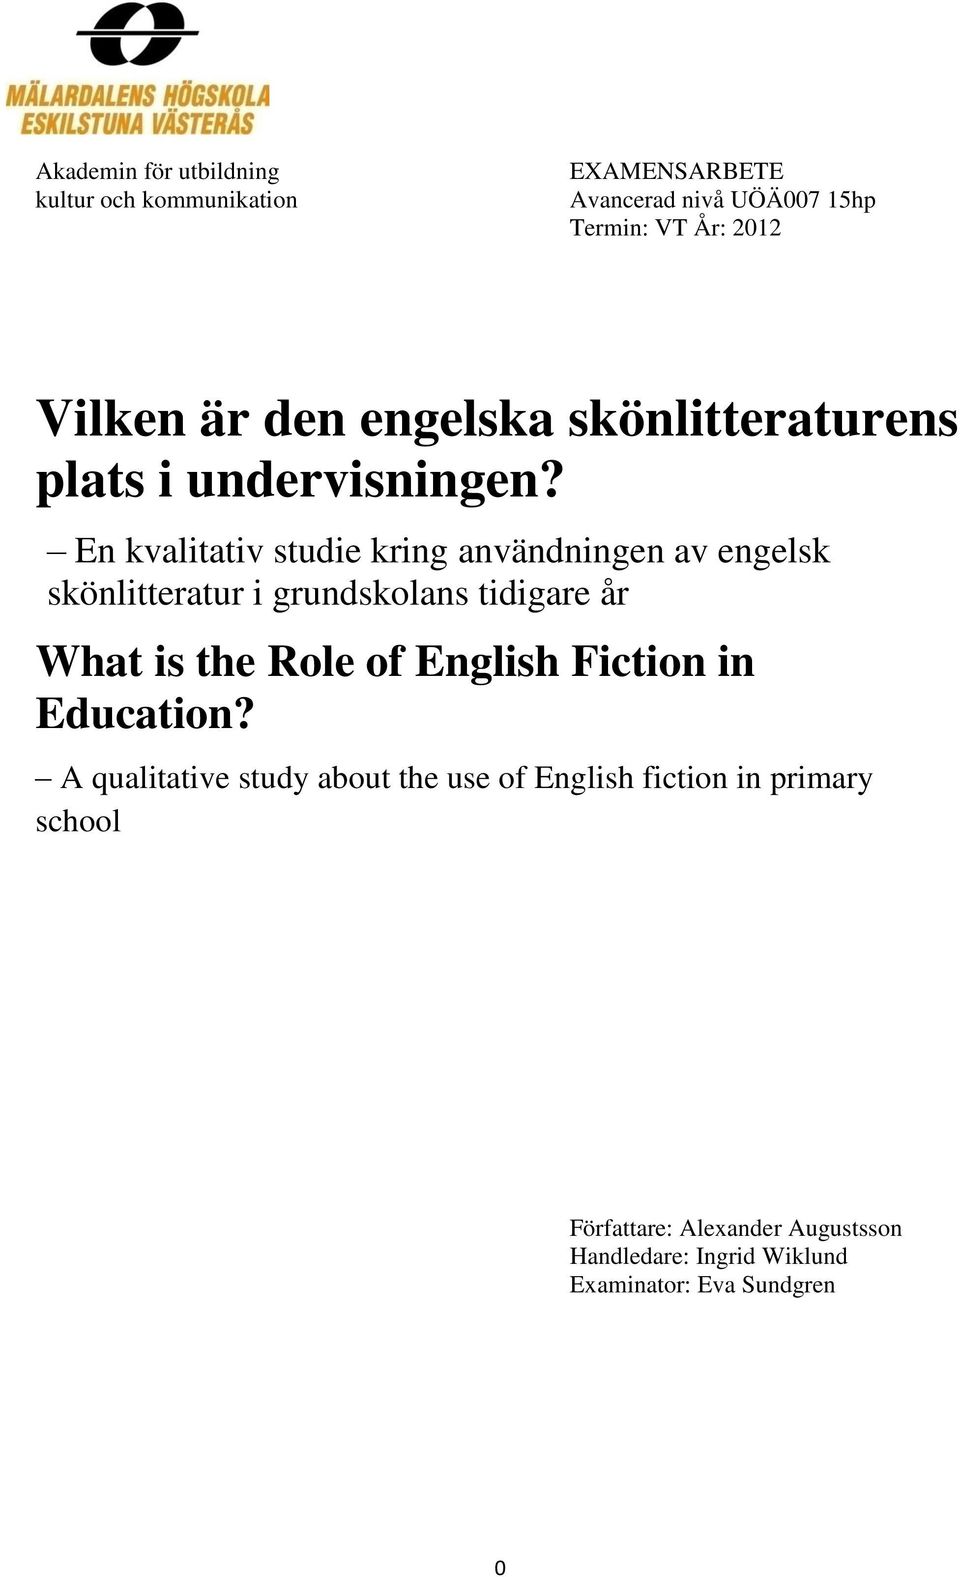 Vilken är den engelska skönlitteraturens plats i undervisningen? - PDF  Gratis nedladdning